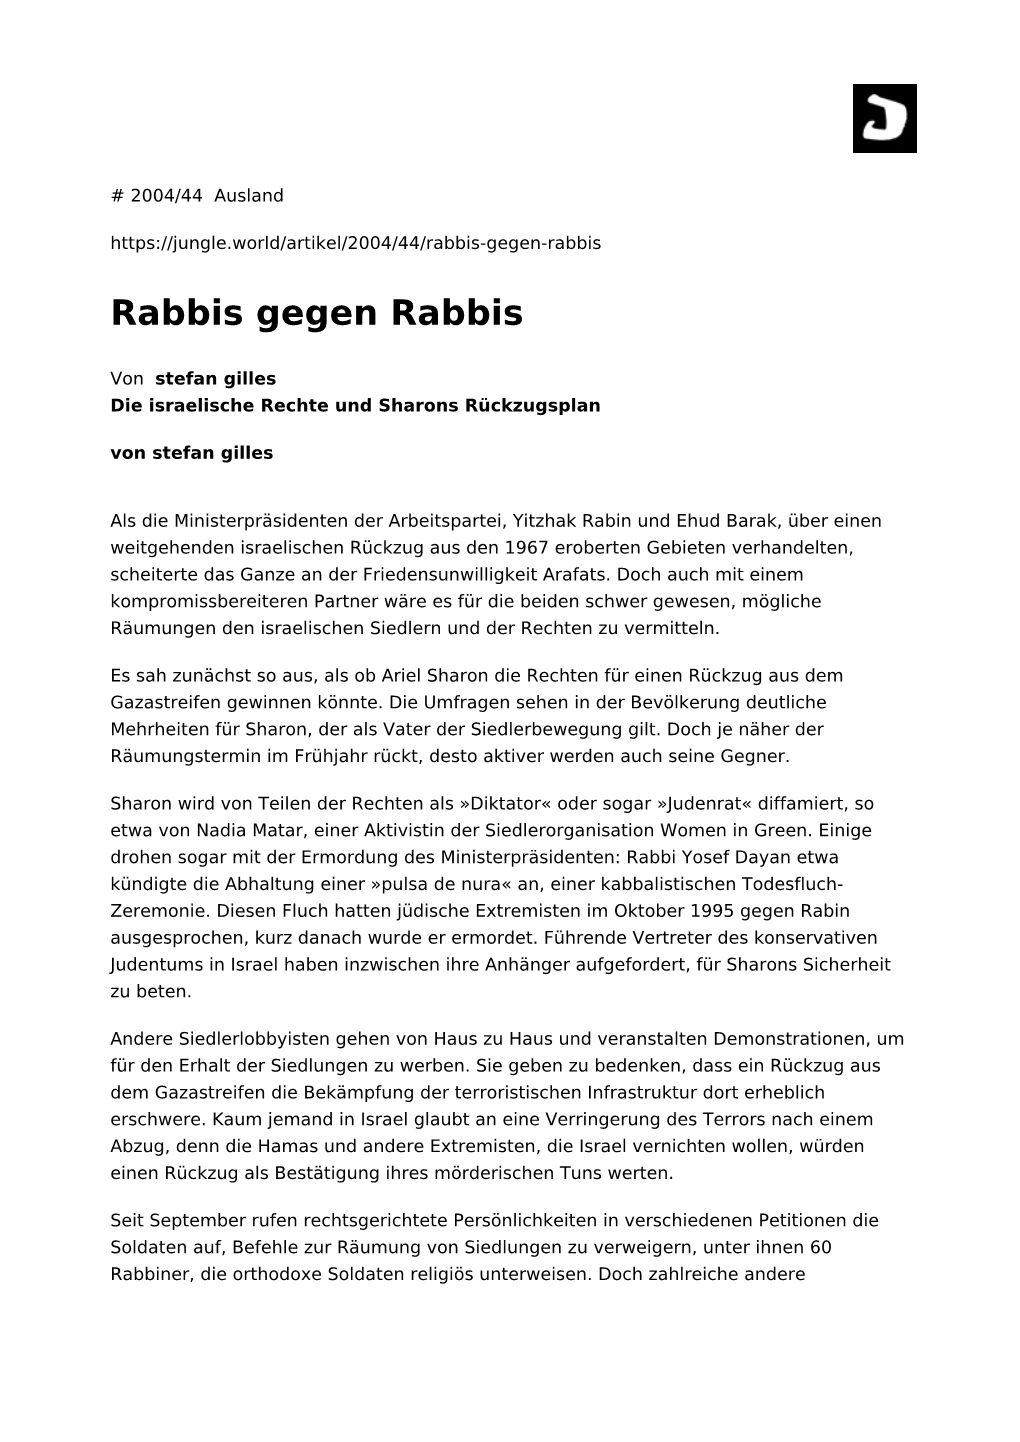 Rabbis Gegen Rabbis